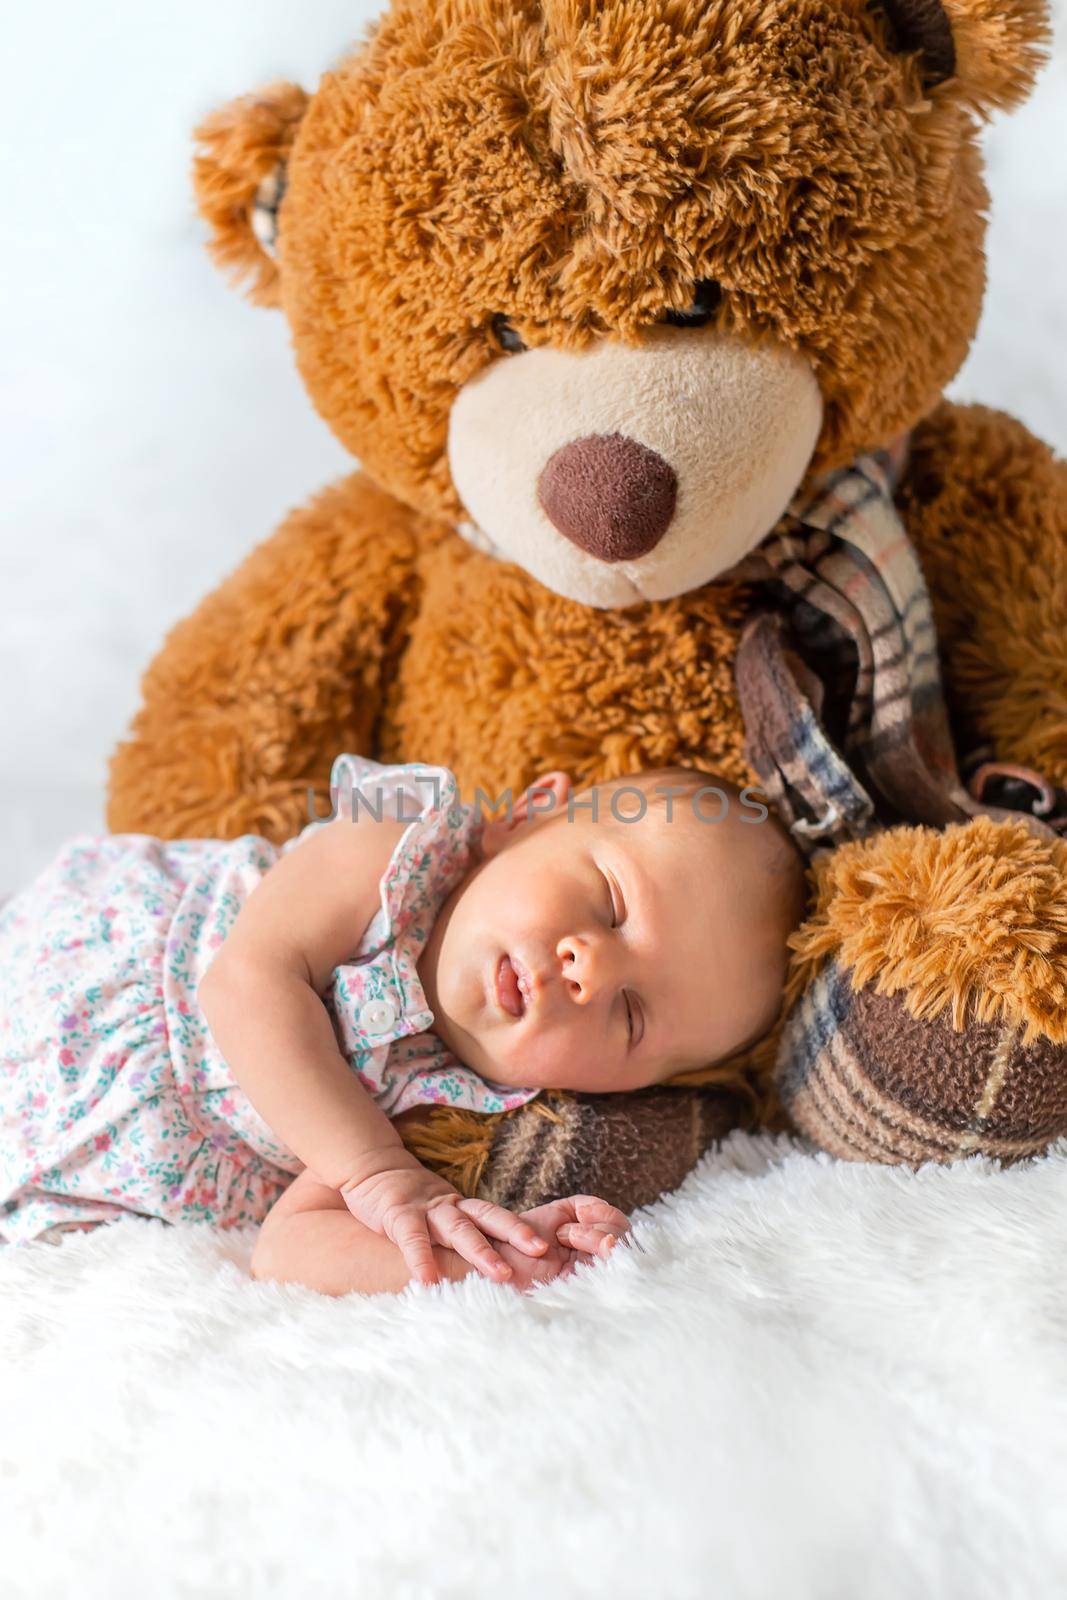 A newborn baby sleeps with a teddy bear. Selective focus.